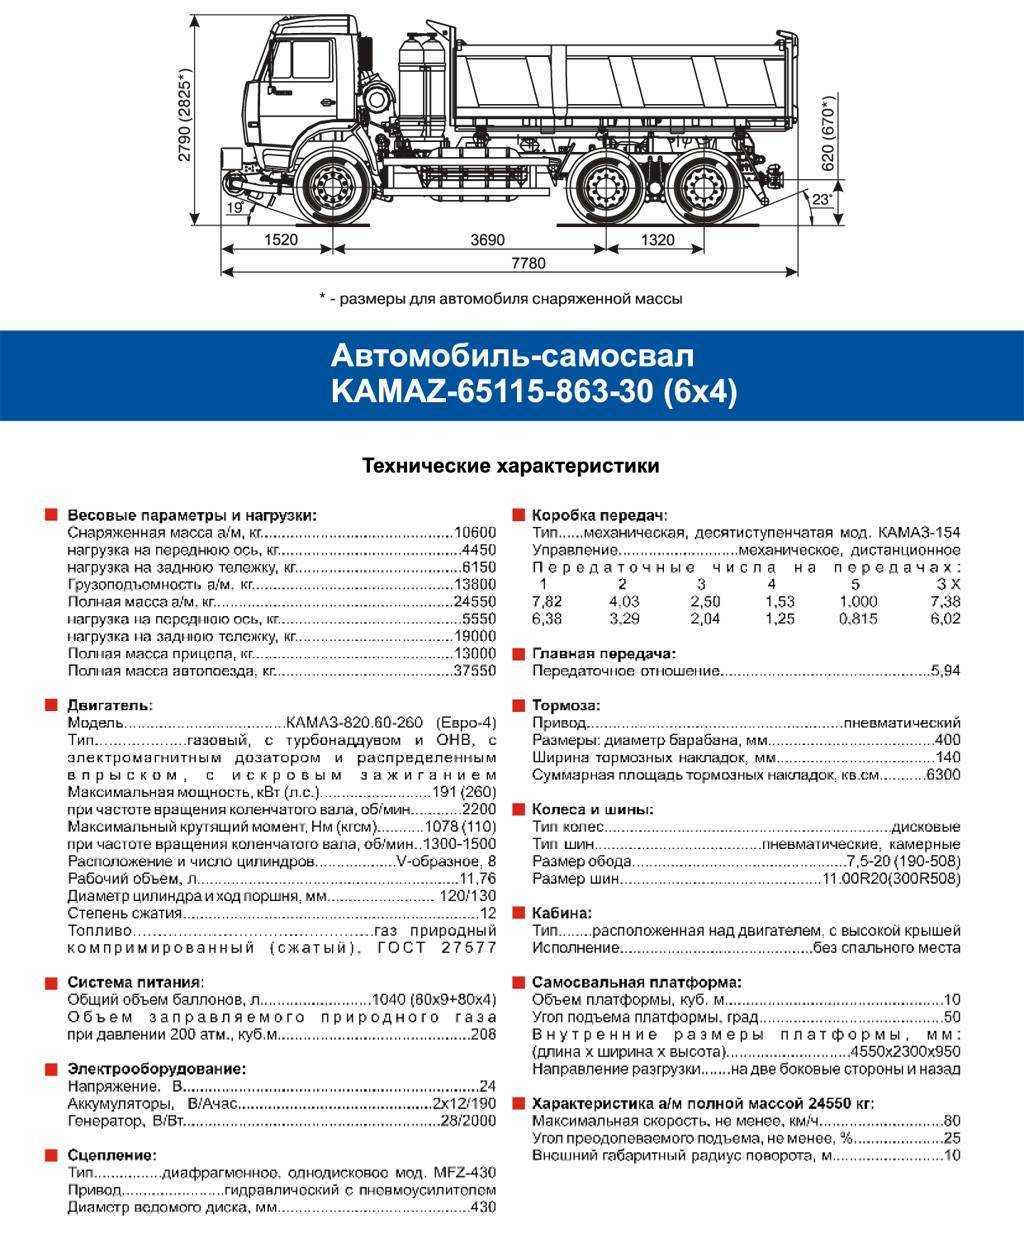 Маз-5516: технические характеристики 20-тонного самосвала, размер и объем кузова, габариты и грузоподъемность